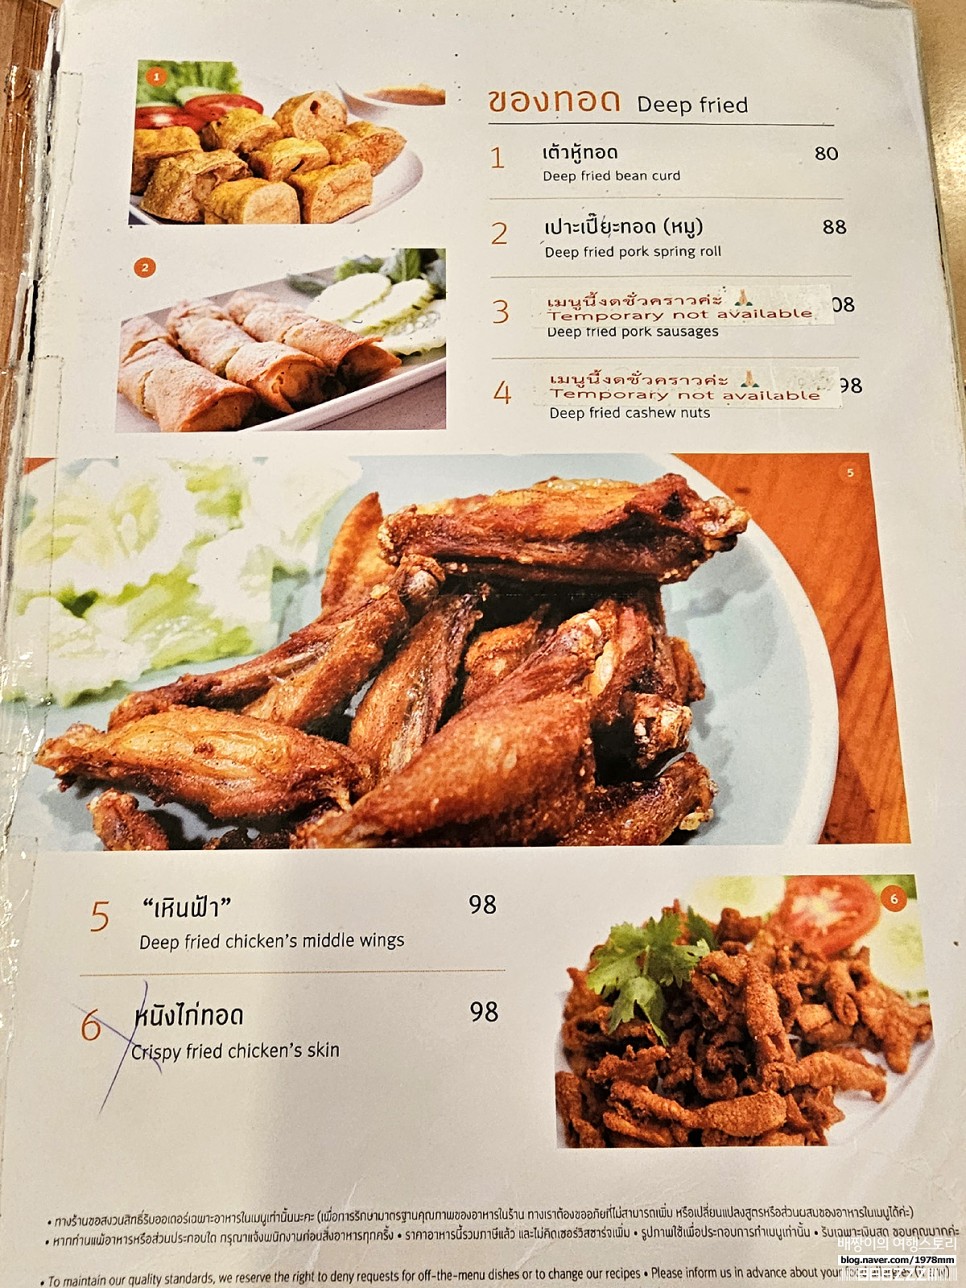 방콕 렉 마사지 샵 로컬 가격 & 방콕 현지인 맛집 인터레스토랑 시암